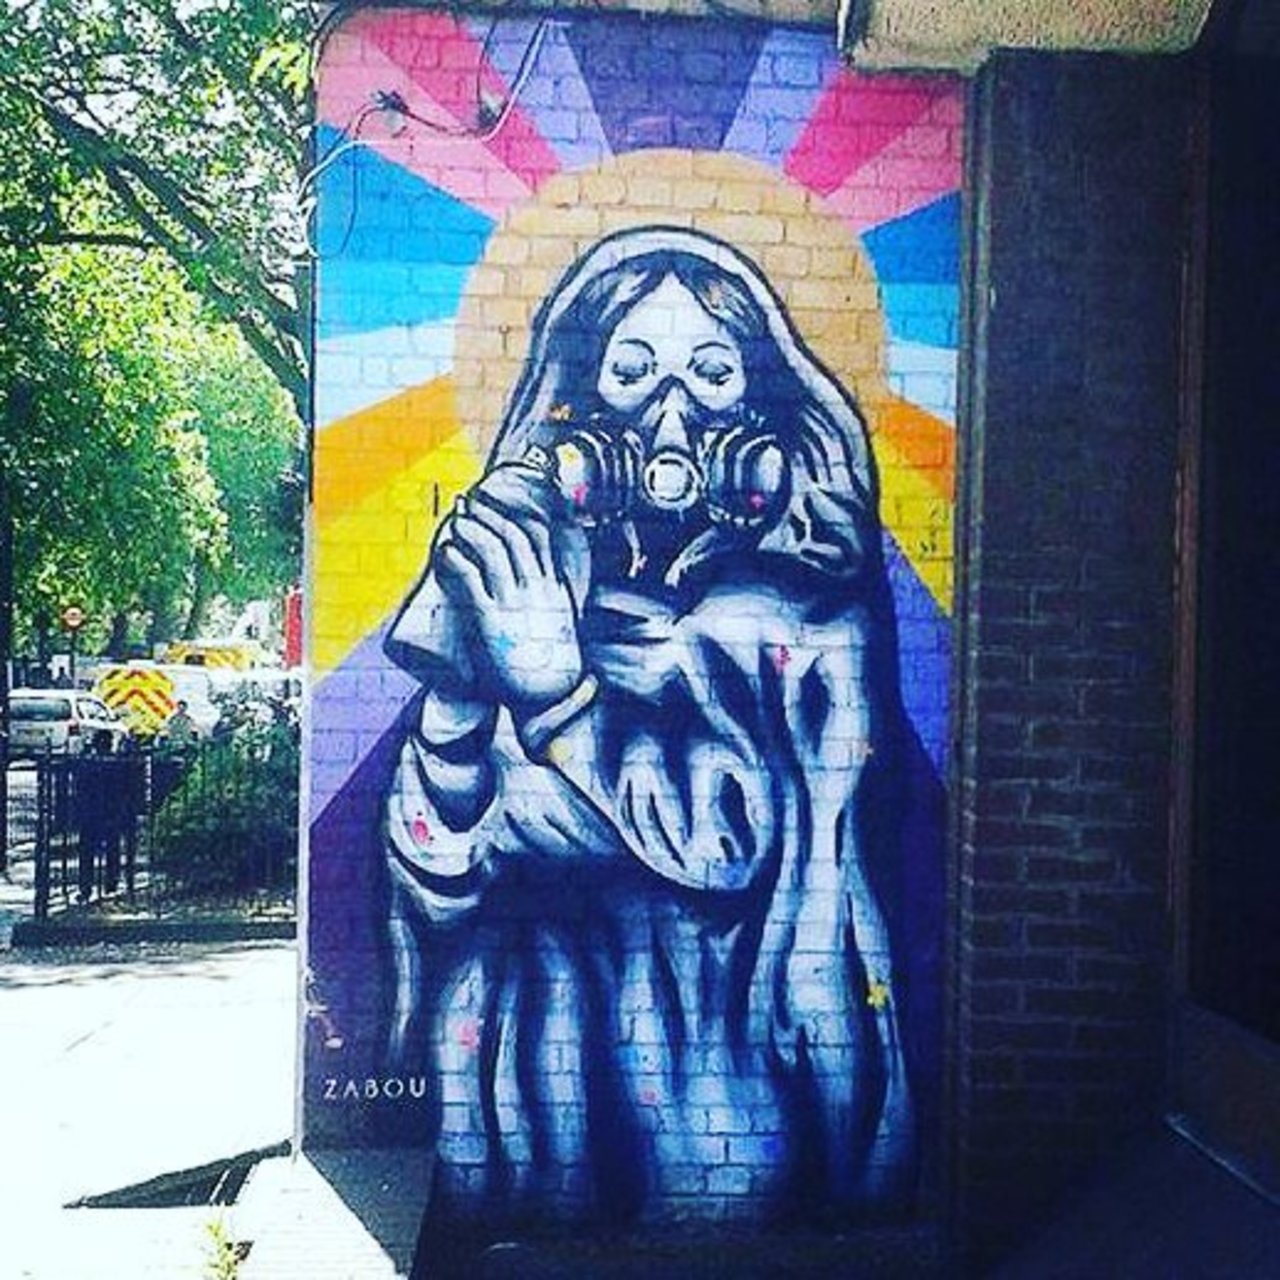 #Paris #graffiti photo by @senyorerre http://ift.tt/1k3JcGq #StreetArt https://t.co/ee4oPztYeH